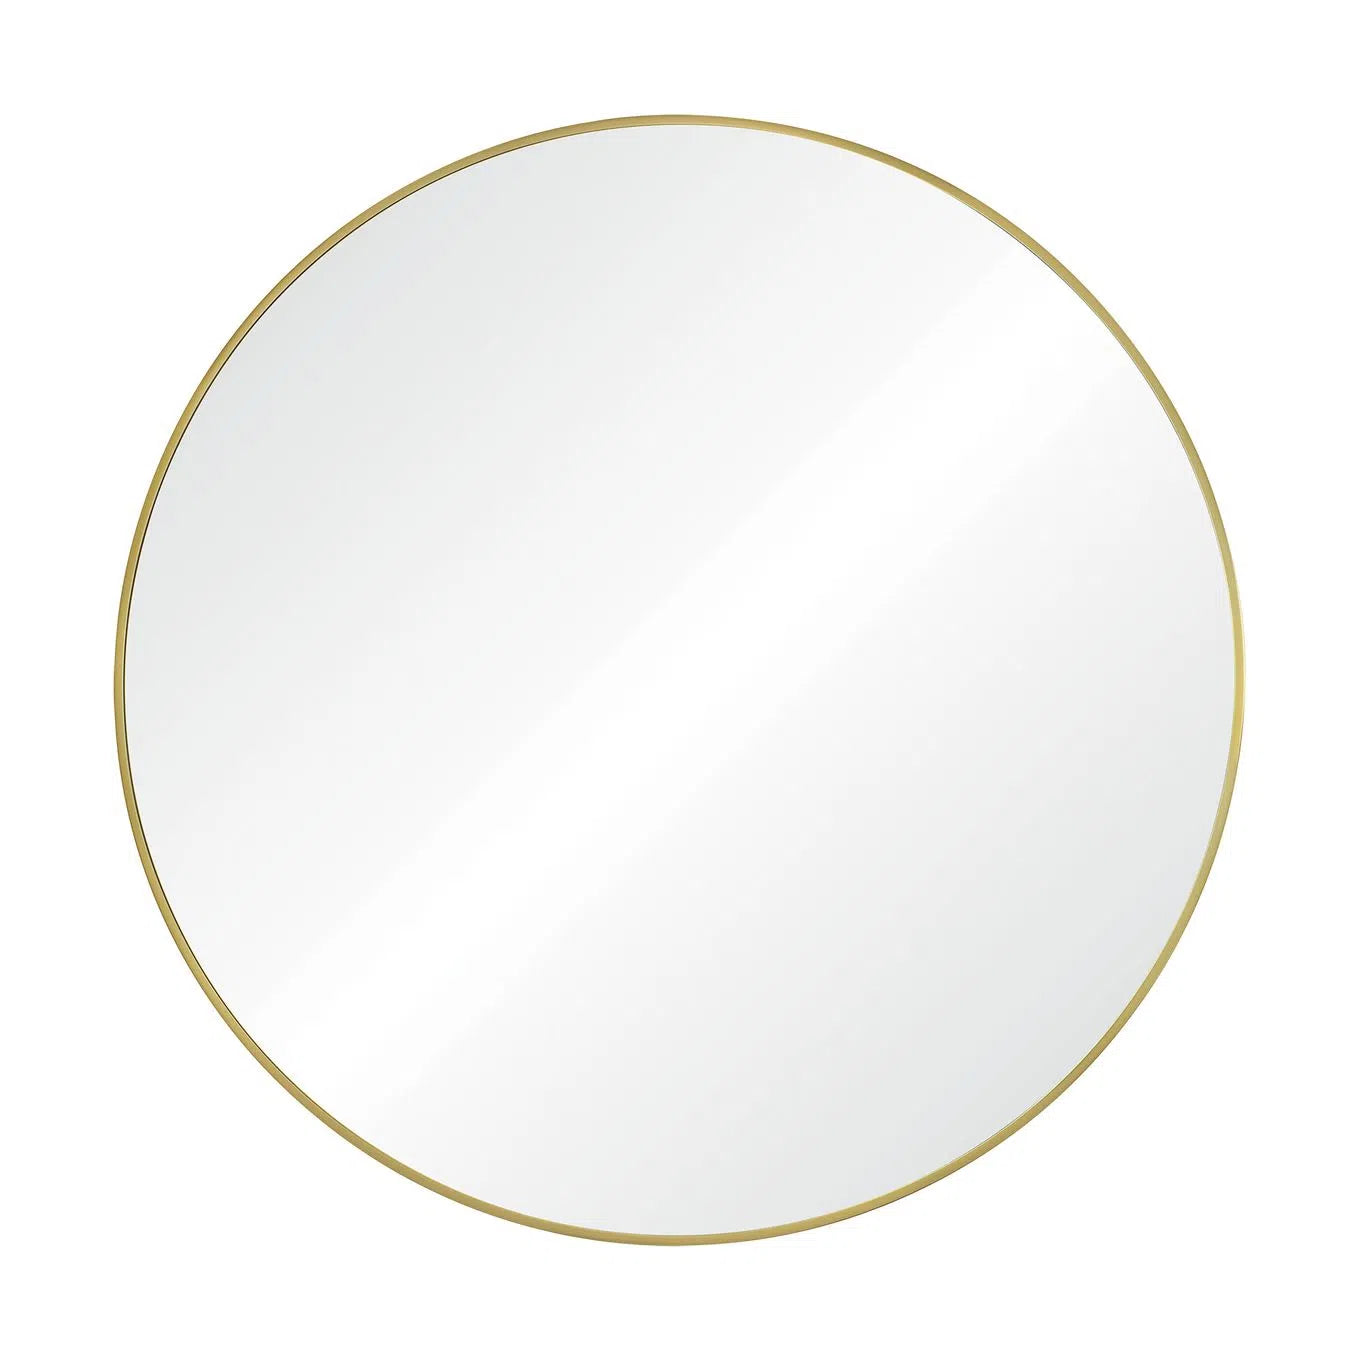 Grady 40" Gold Round Mirror